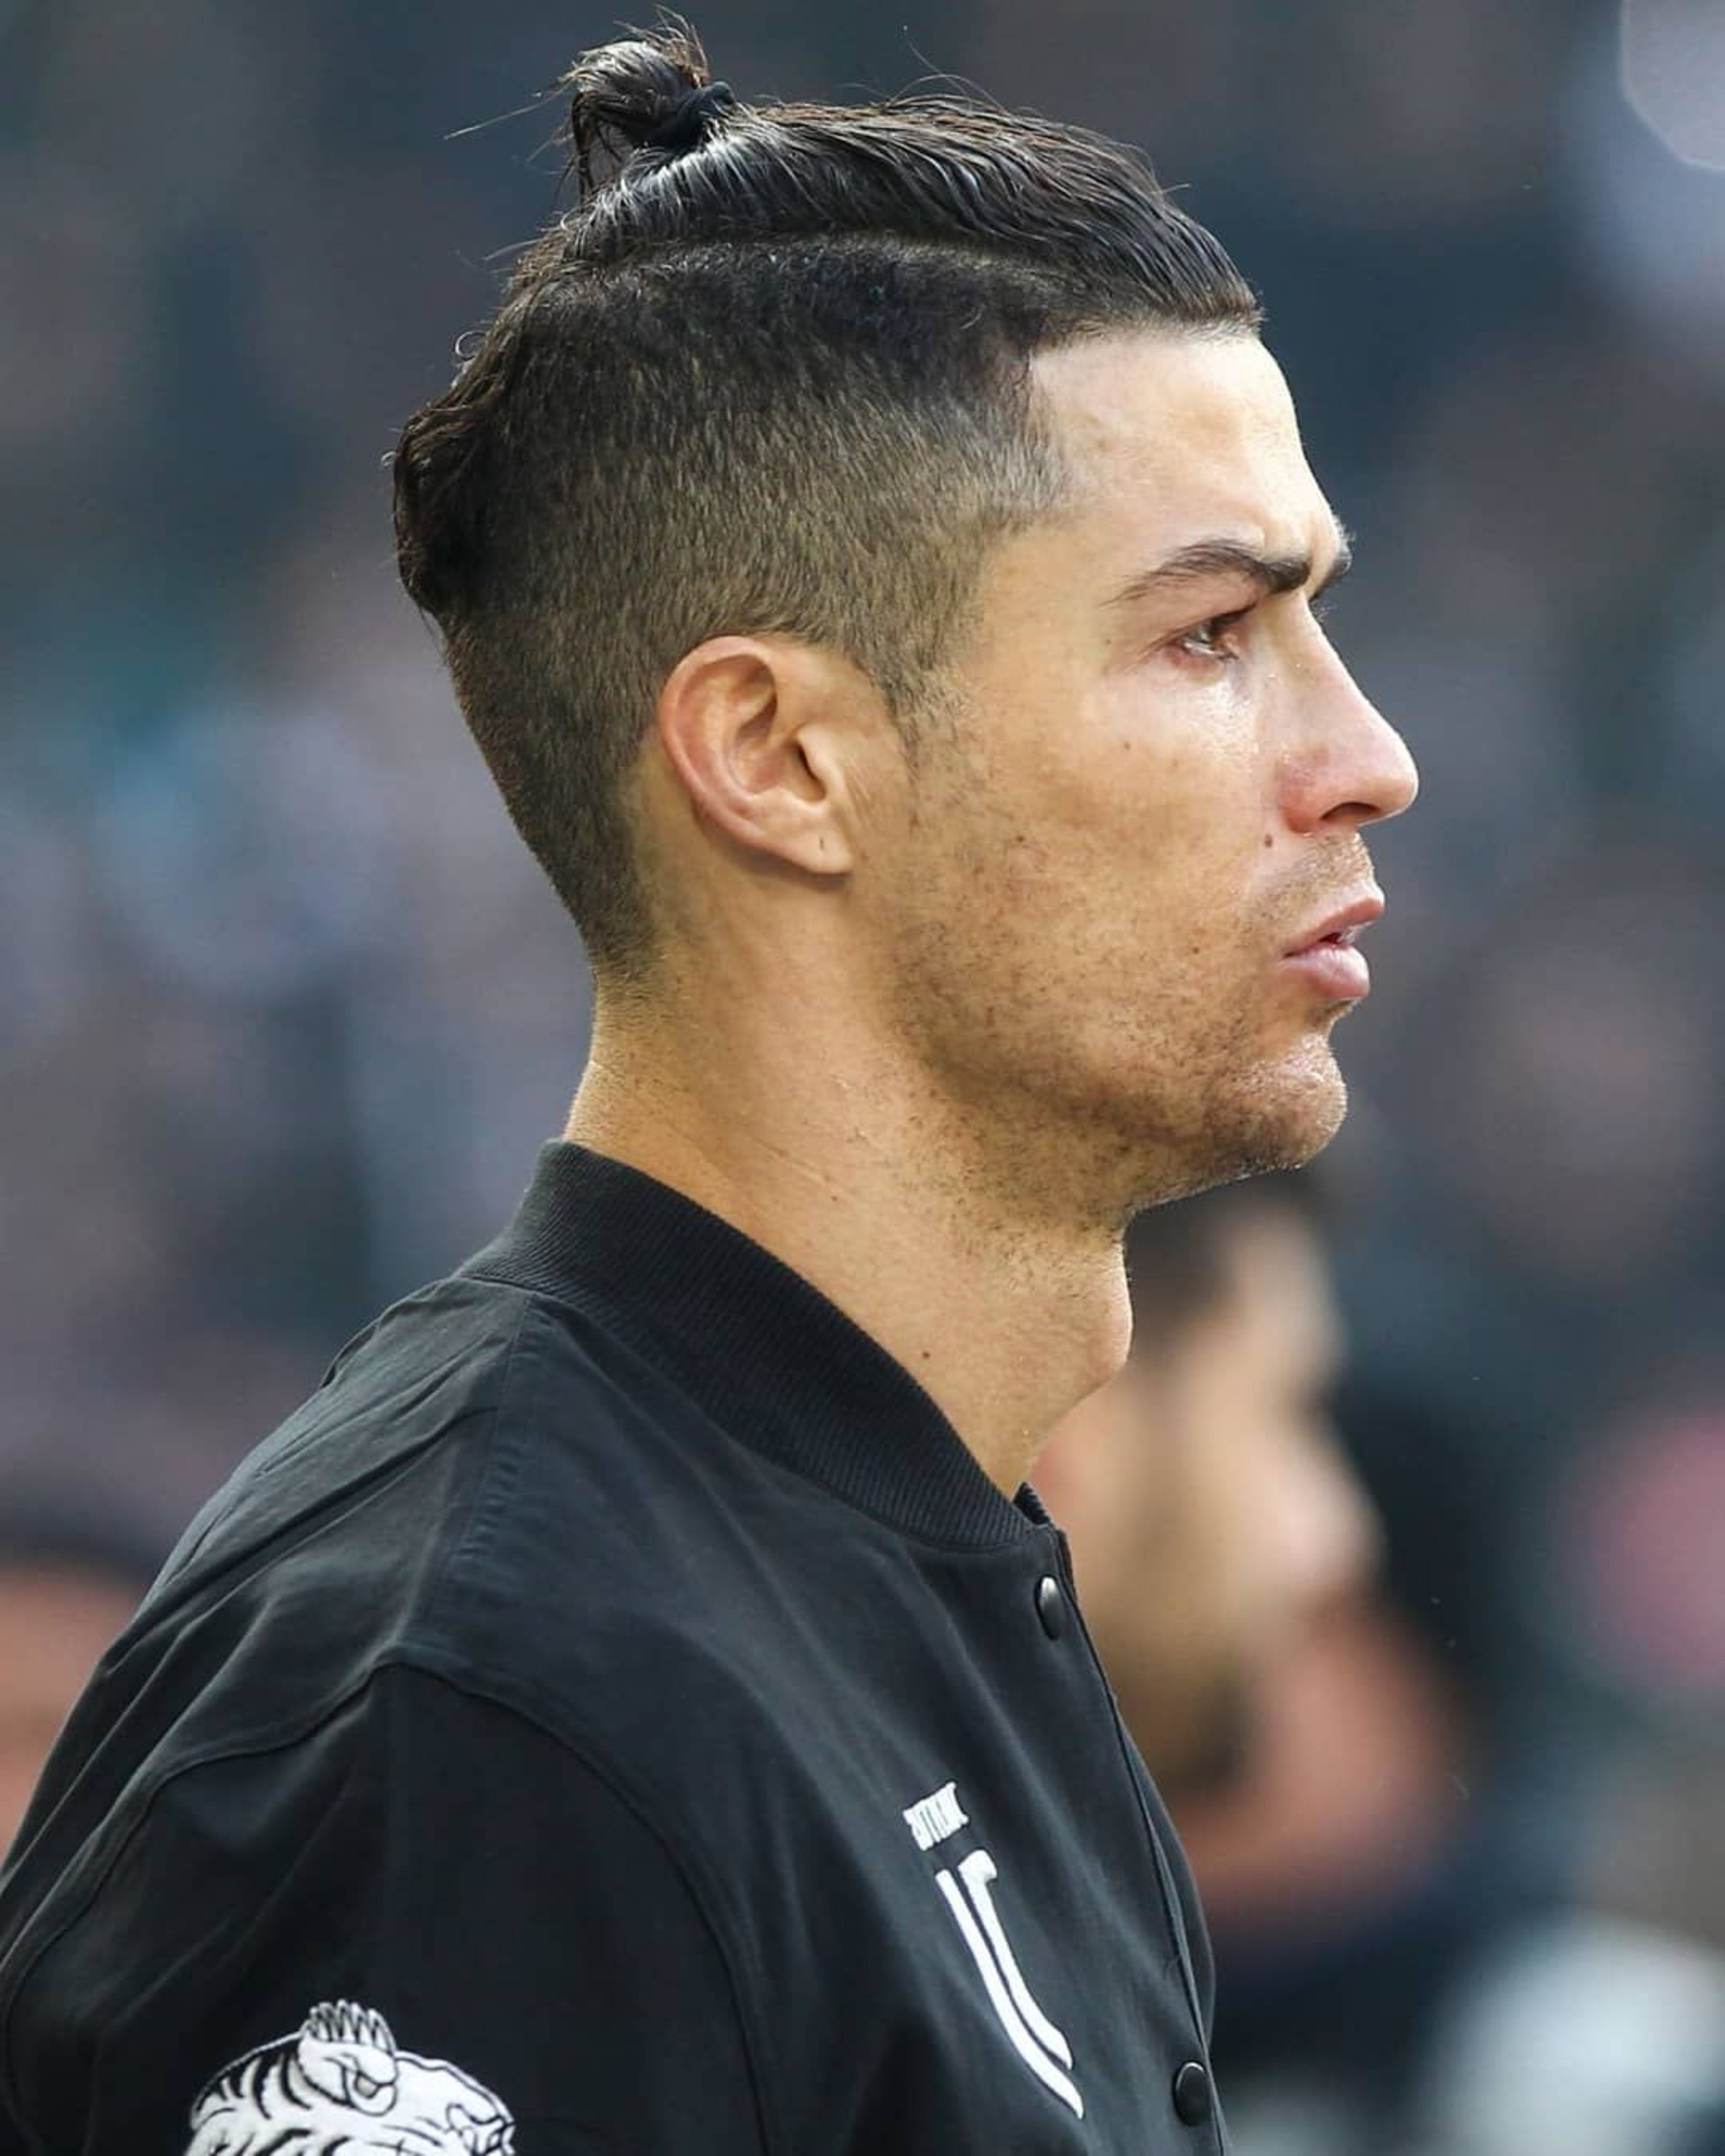 Ronaldo-Man-Bun.jpg